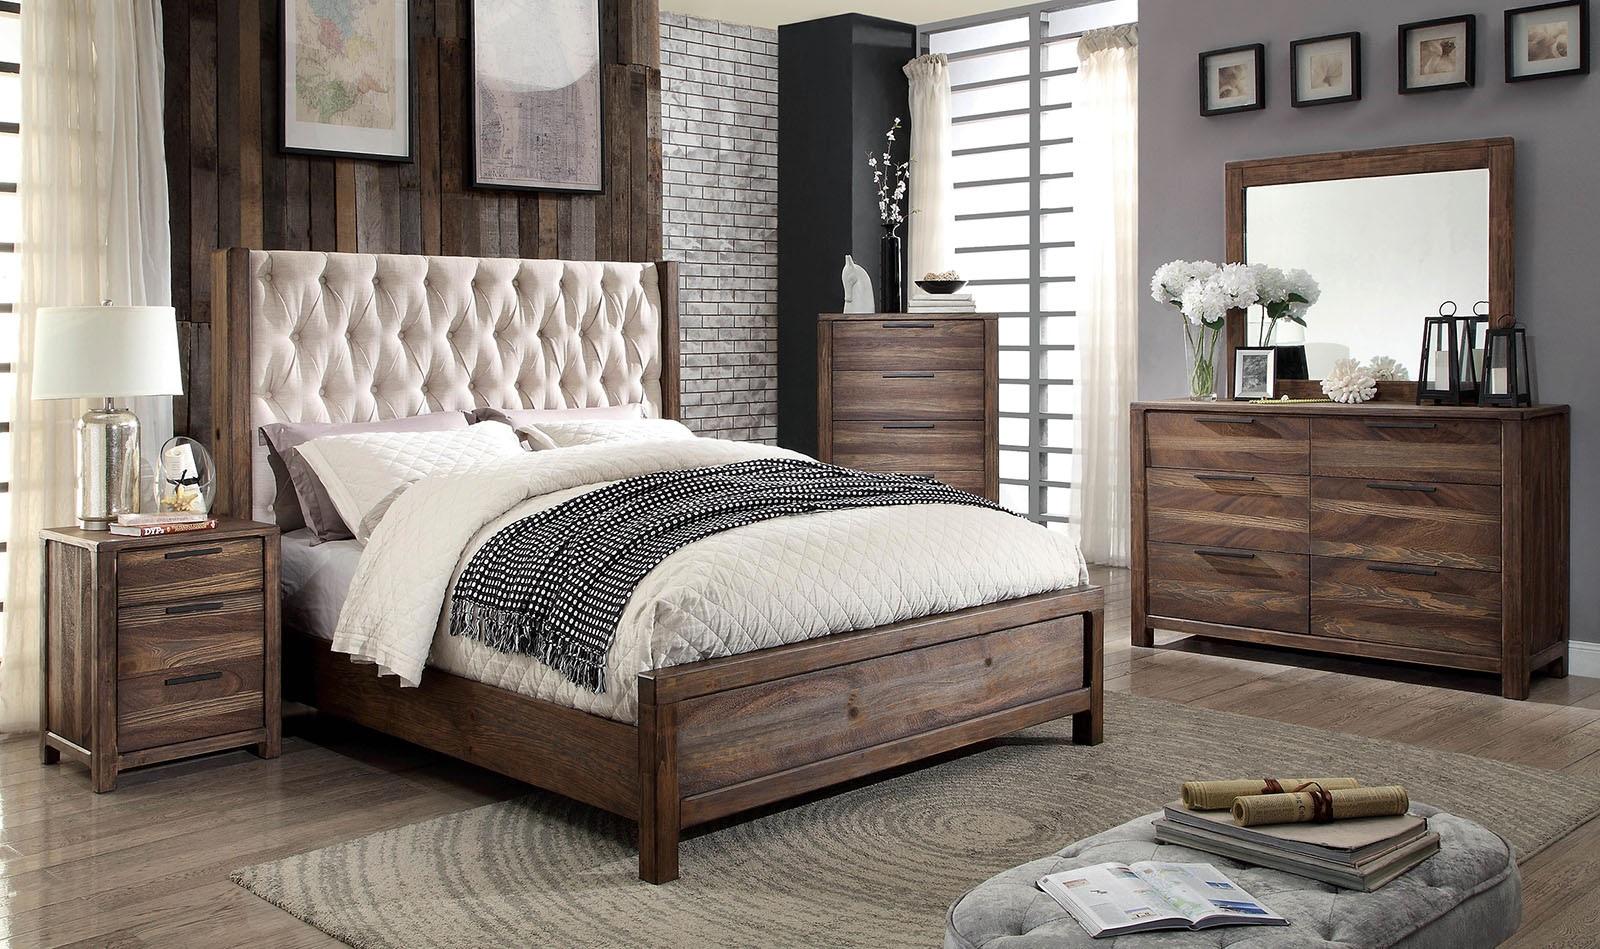 

    
Rustic Natural & Beige Solid Wood Queen Bedroom Set 5pcs Furniture of America CM7577-Q Hutchinson
